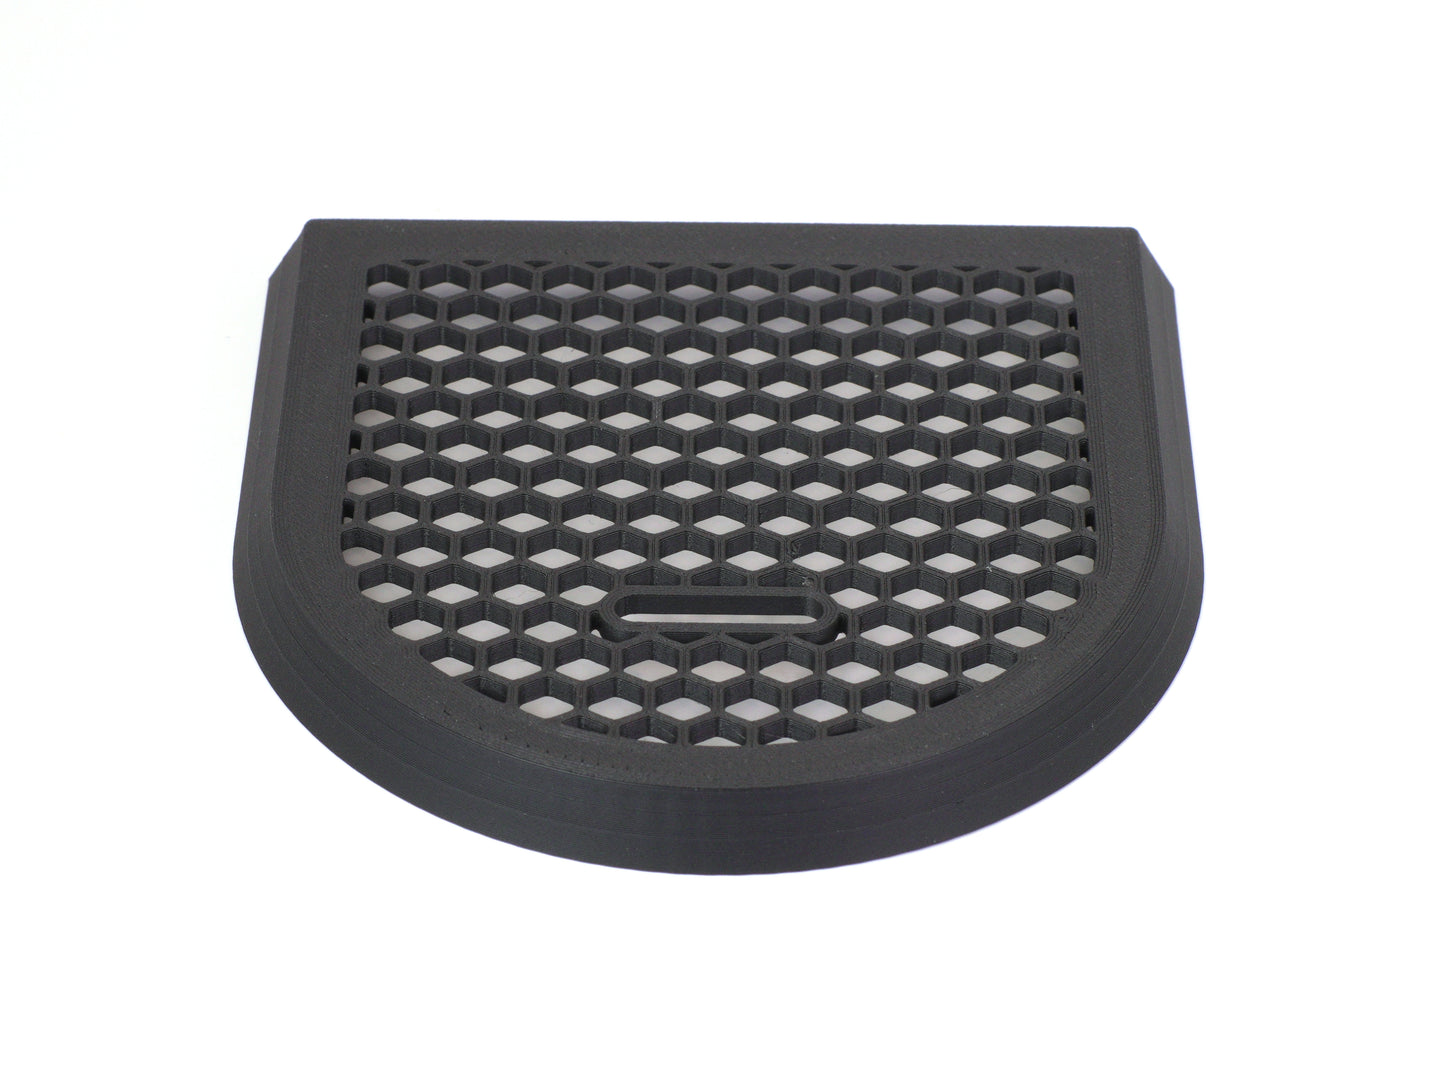 Delonghi Dedica EC 685 Drip Tray | Honeycomb Design